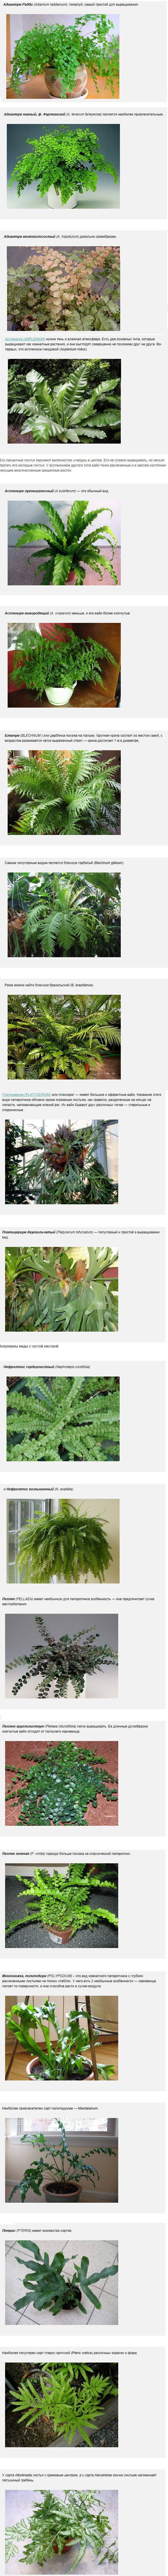 Декоративные папоротники в ландшафтном дизайне сада: фото, названия и описание видов садовых растений